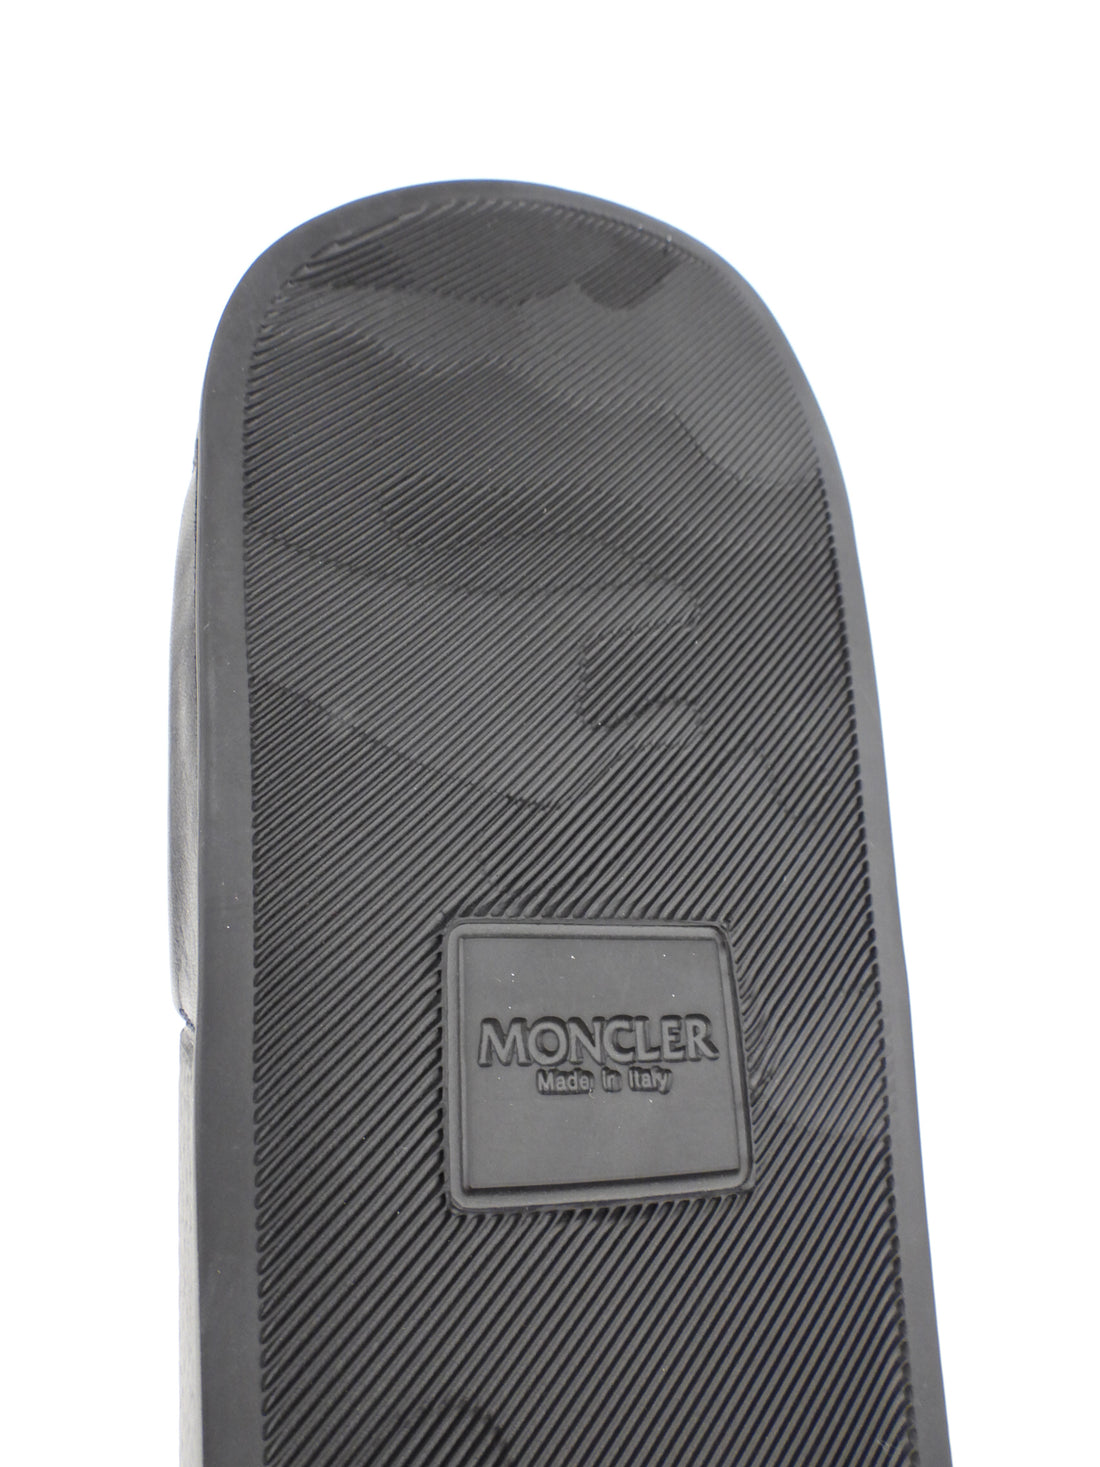 Moncler Black and White Logo Slide Sandals - 40